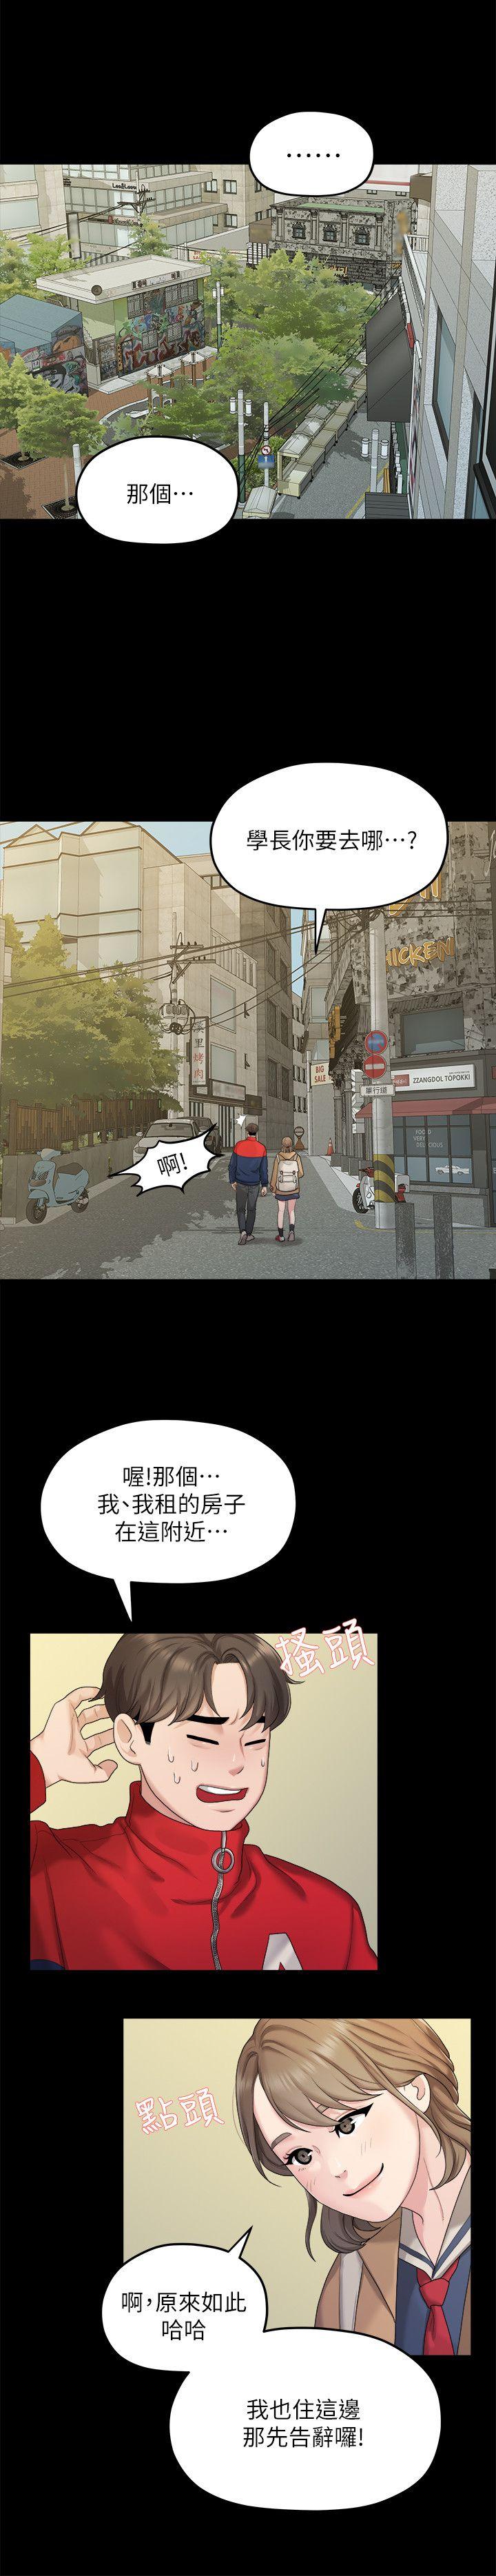 韩国污漫画 我們的非常關系 第20话-相佑与多贤的初次见面 23